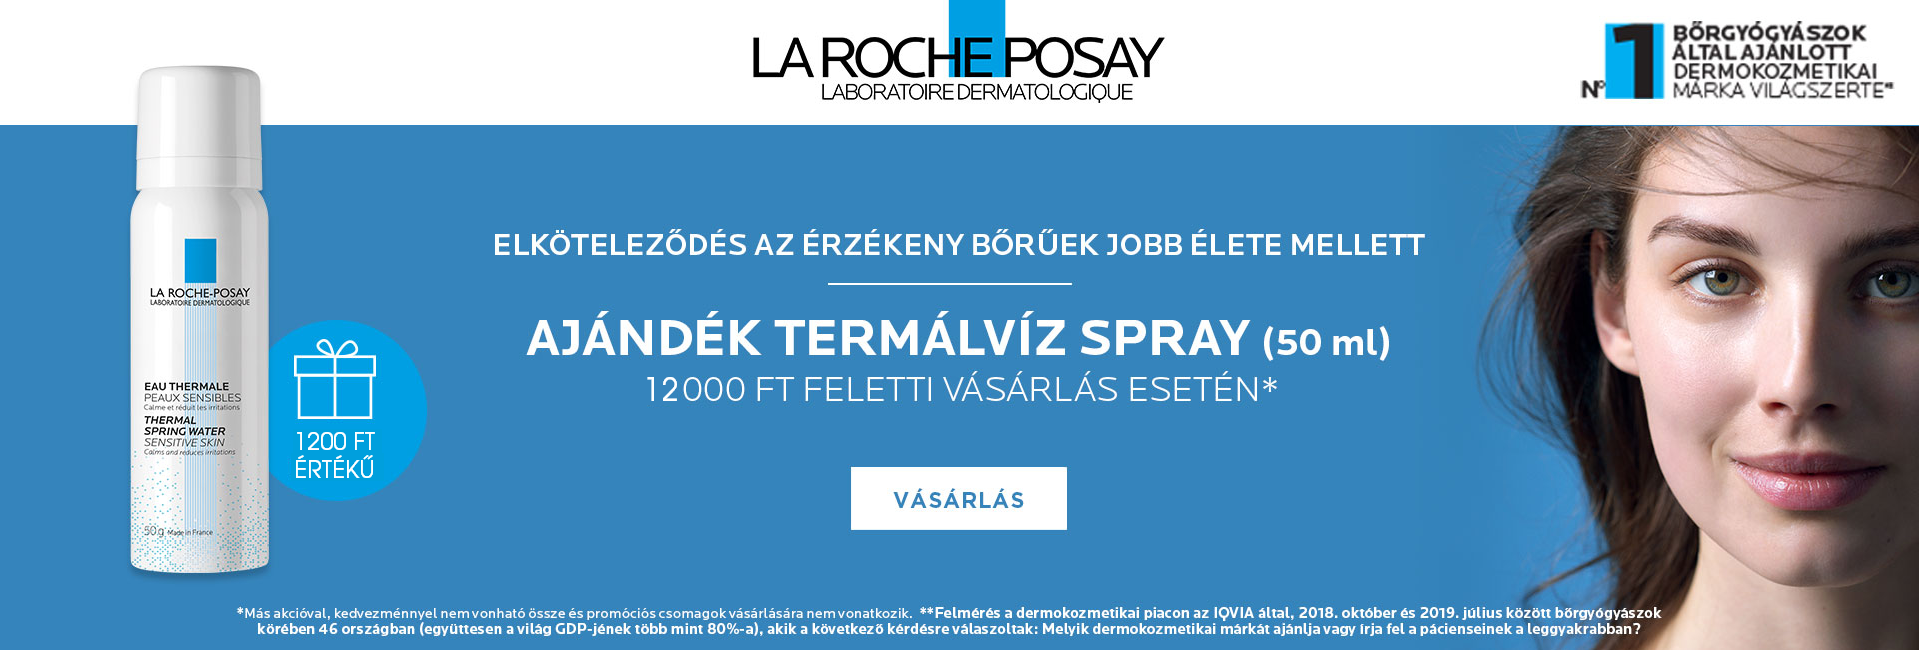 2021. február 8-15. között minden 12.000 Ft feletti La Roche-Posay megrendelés mellé ajándékba adunk 1db La Roche-Posay termálvíz spray 50ml-t!